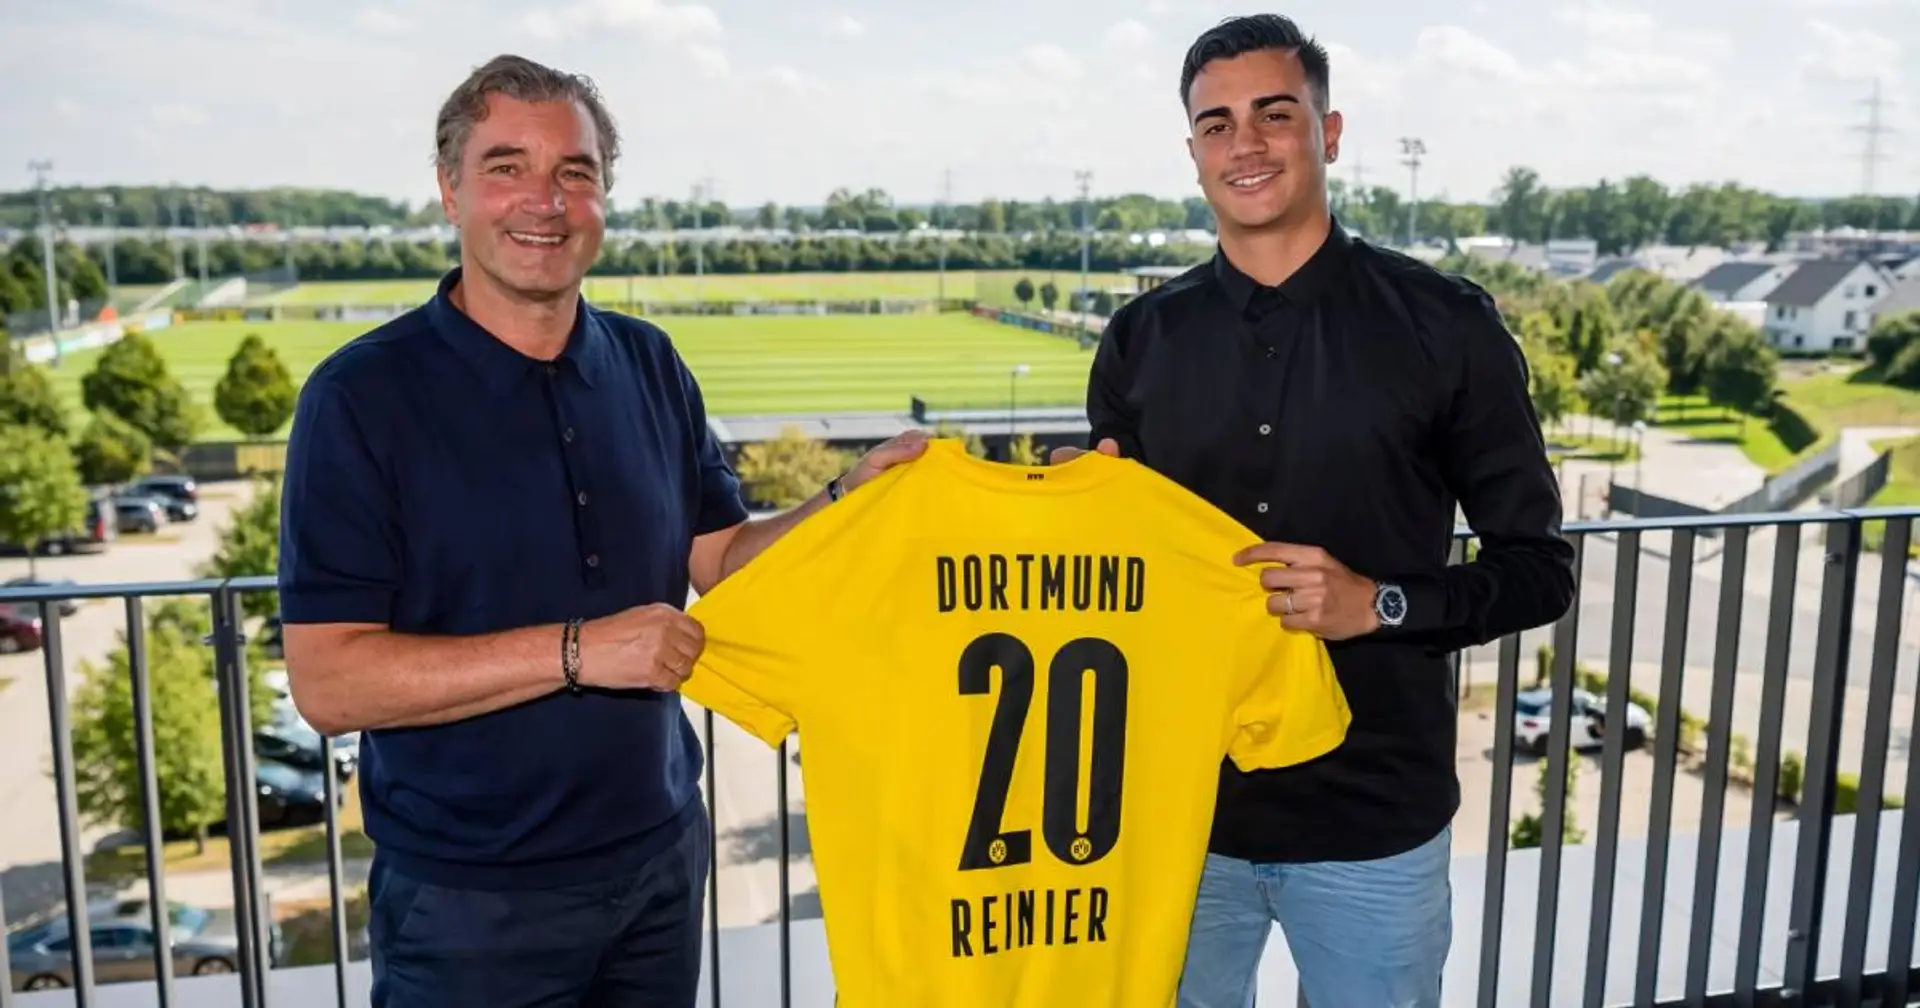 Reinier enthüllt Details über BVB-Wechsel: Der Klub meines Ex-Trainers kam zu spät